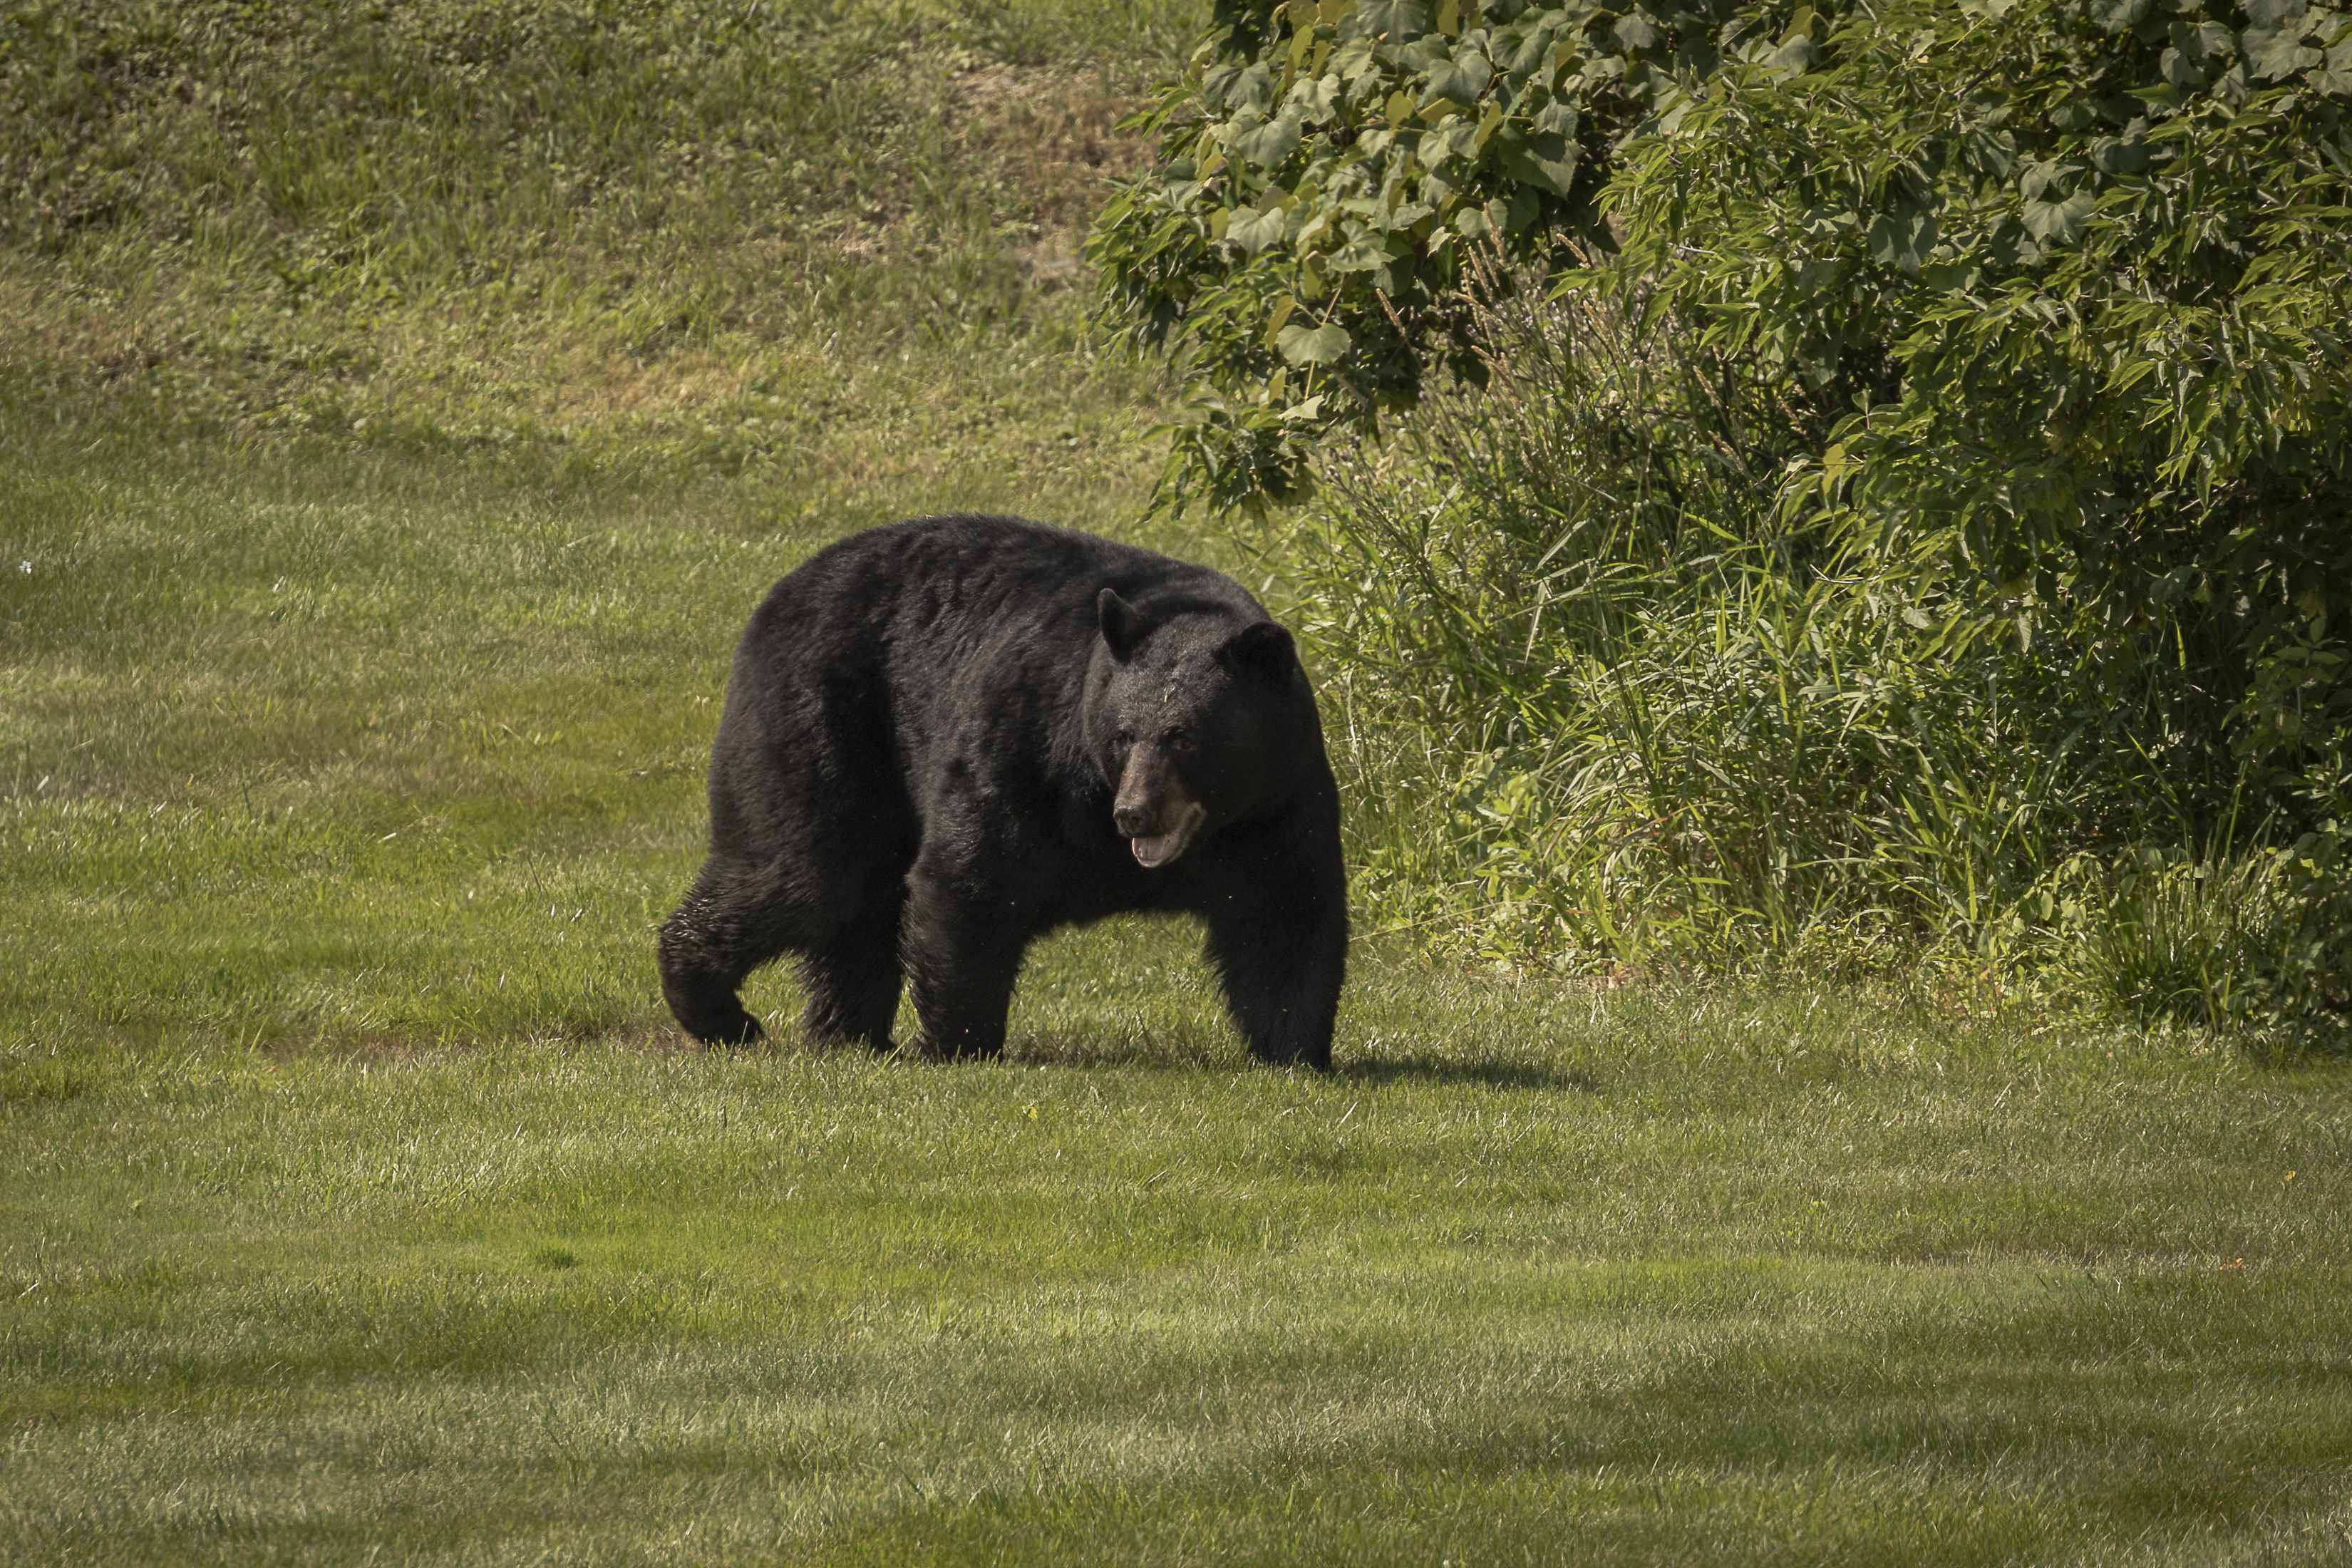 American Black Bear walks across a grassy field